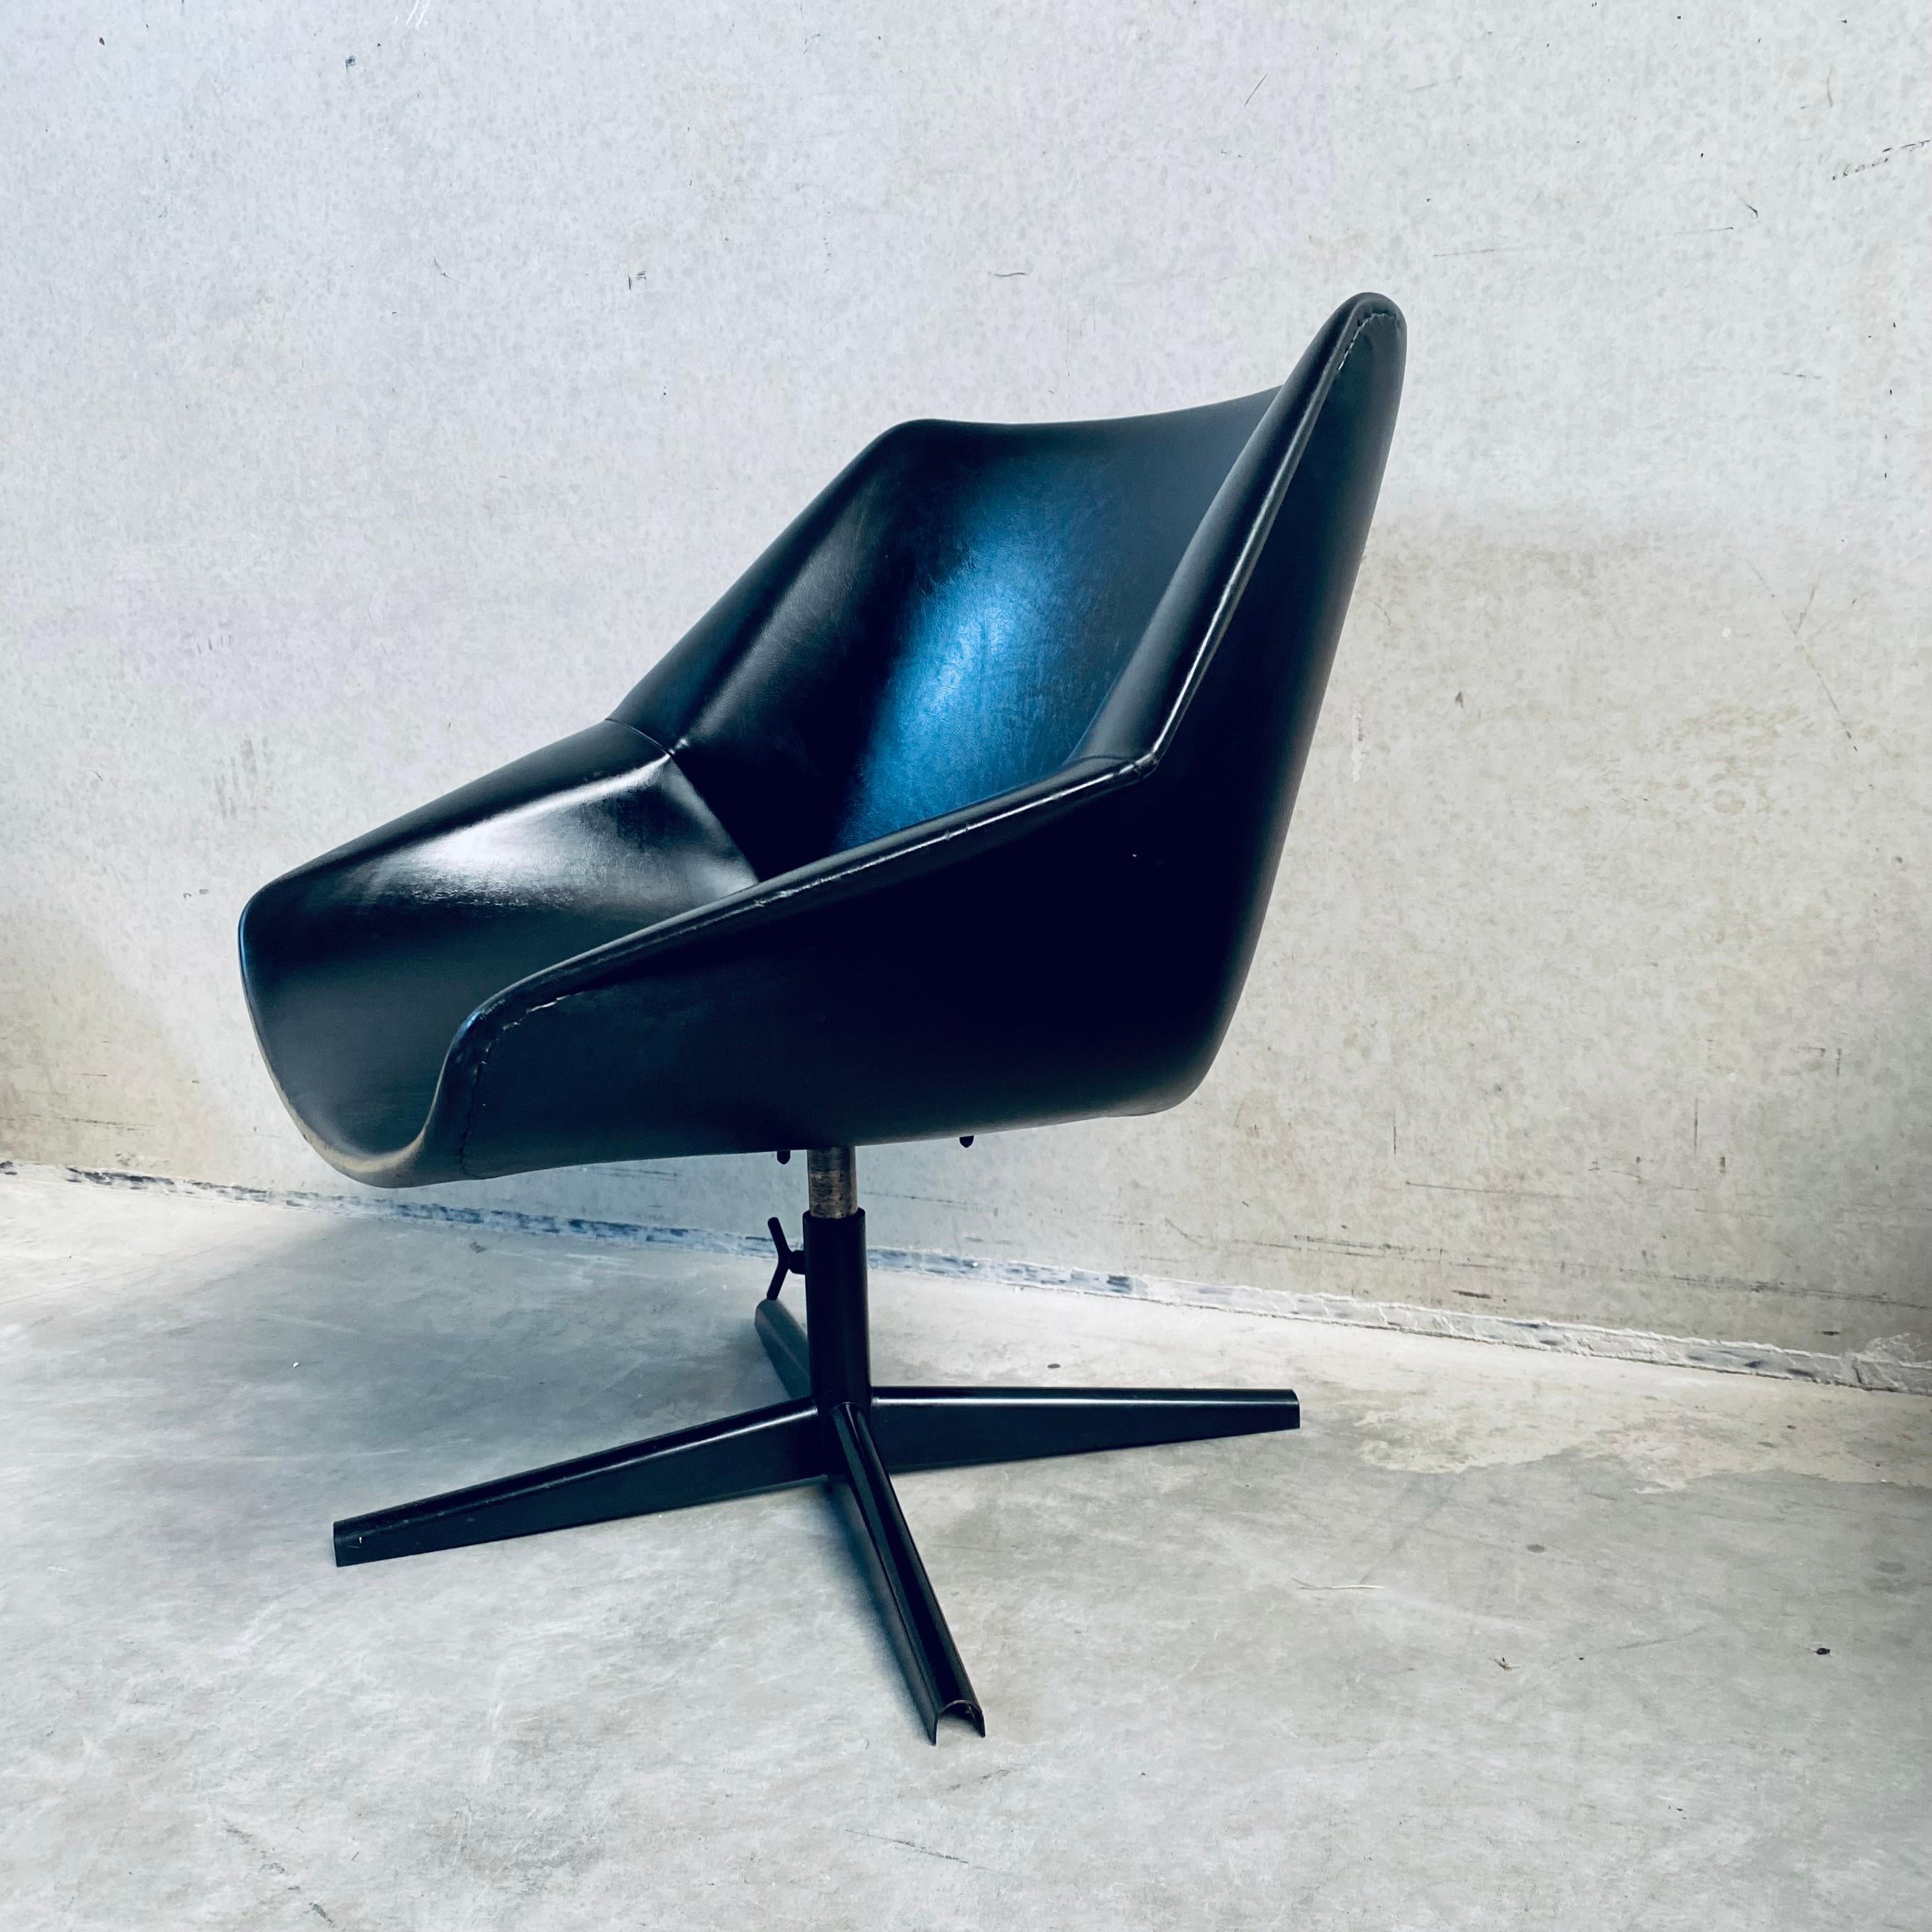 Découvrez une sophistication intemporelle avec l'emblématique chaise Pastoe FM08 Swiffle du milieu du siècle, un chef-d'œuvre du design de Cees Braakman datant de 1959. Fabriqué par le designer visionnaire pour Eleg, ce fauteuil pivotant FM08 allie